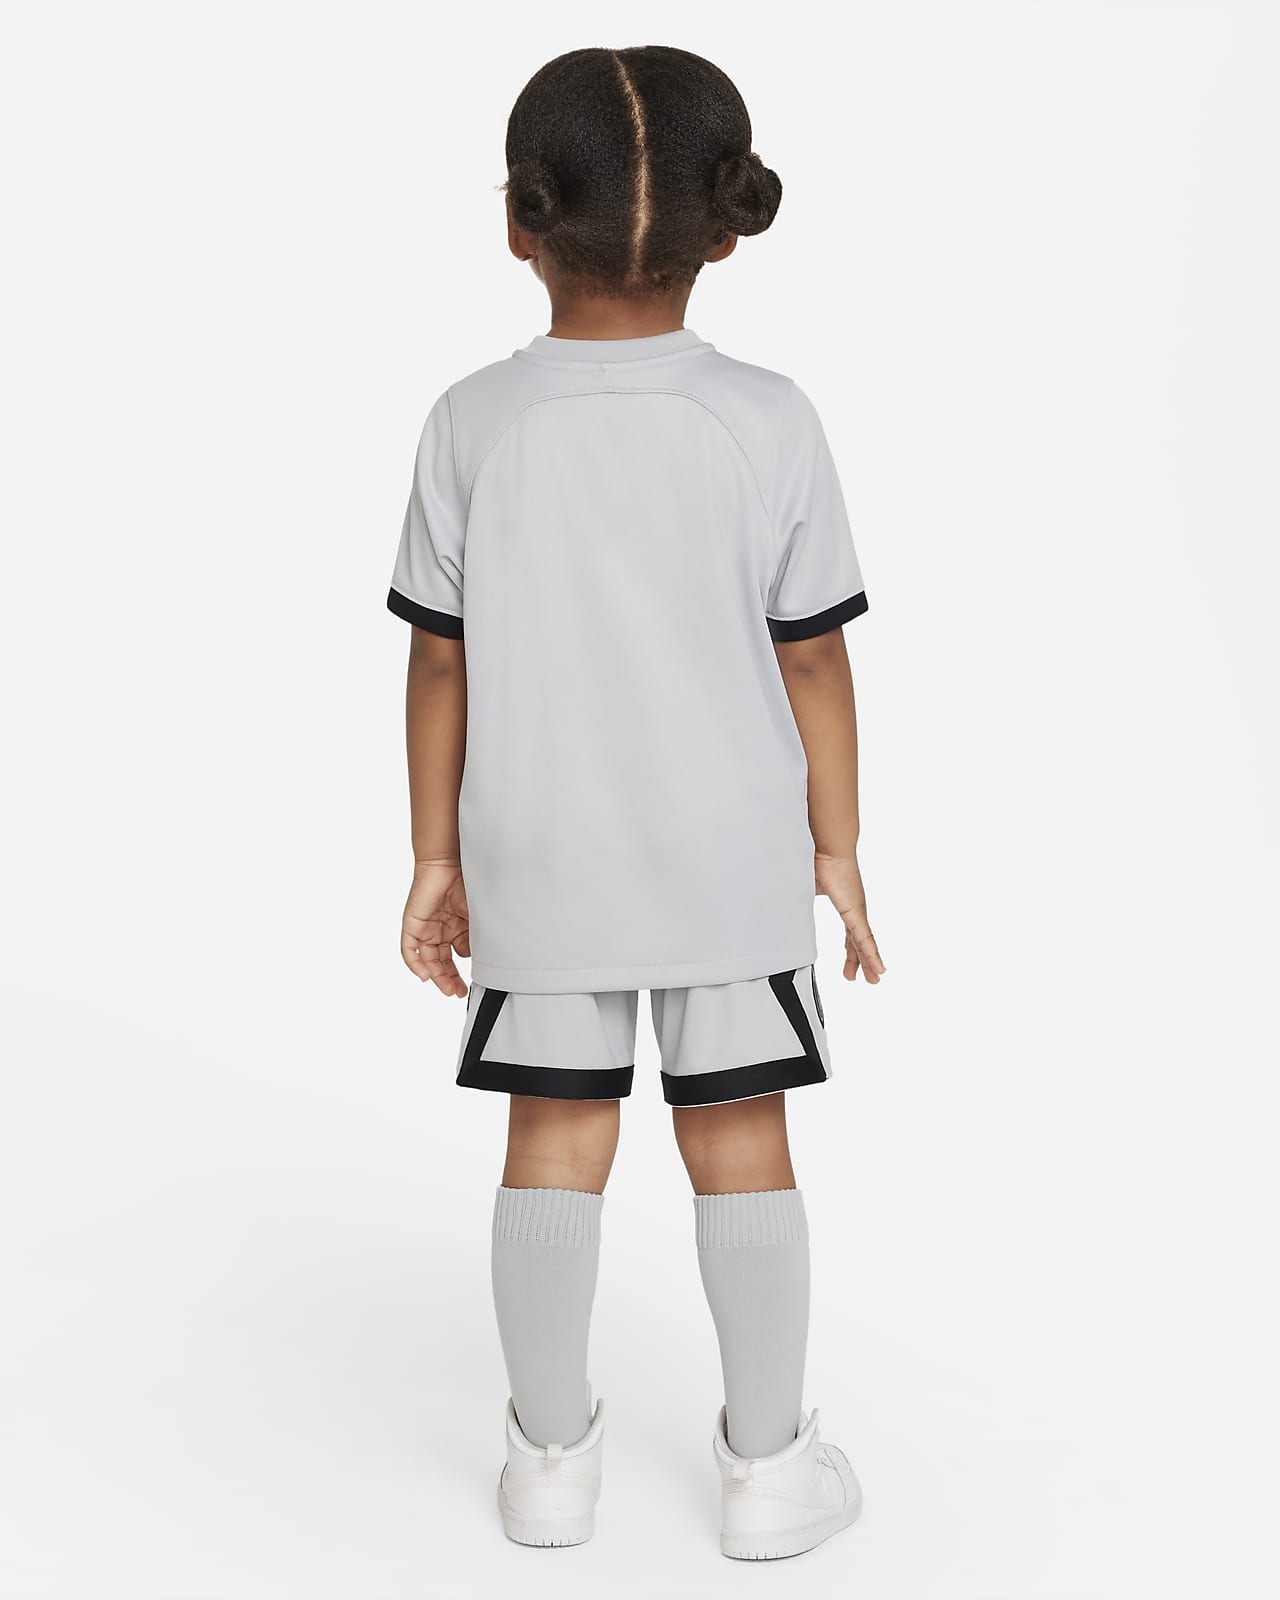 Trein Mona Lisa vreemd Paris Saint-Germain 2022/23 Away Younger Kids' Nike Football Kit. Nike GB